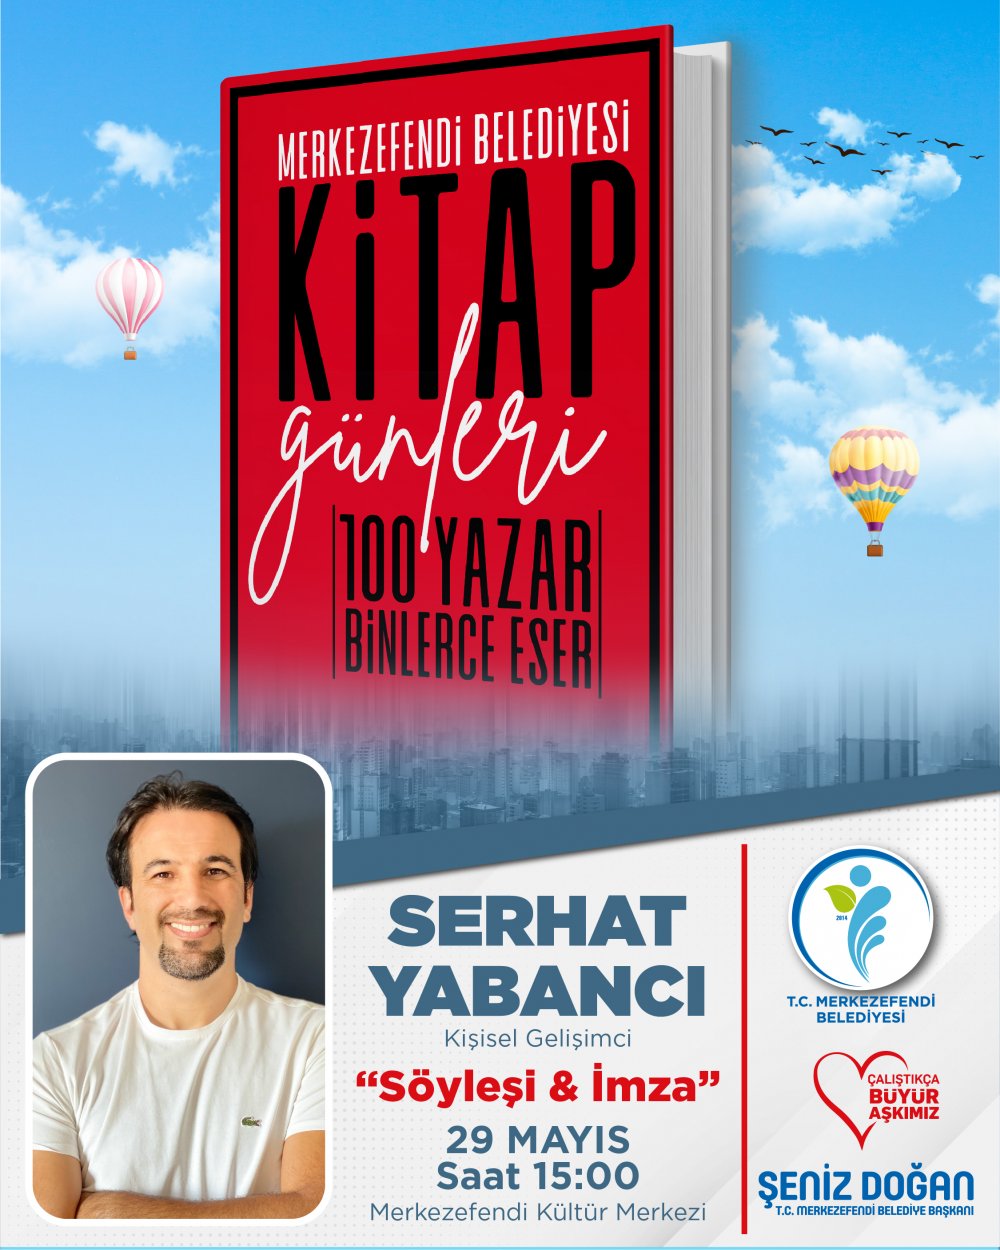 Merkezefendi Belediyesi Kitap Günleri'nde üçüncü gün, Türkiye'nin saygın ve popüler yazarlarının söyleşi ve imza günleriyle devam edecek.